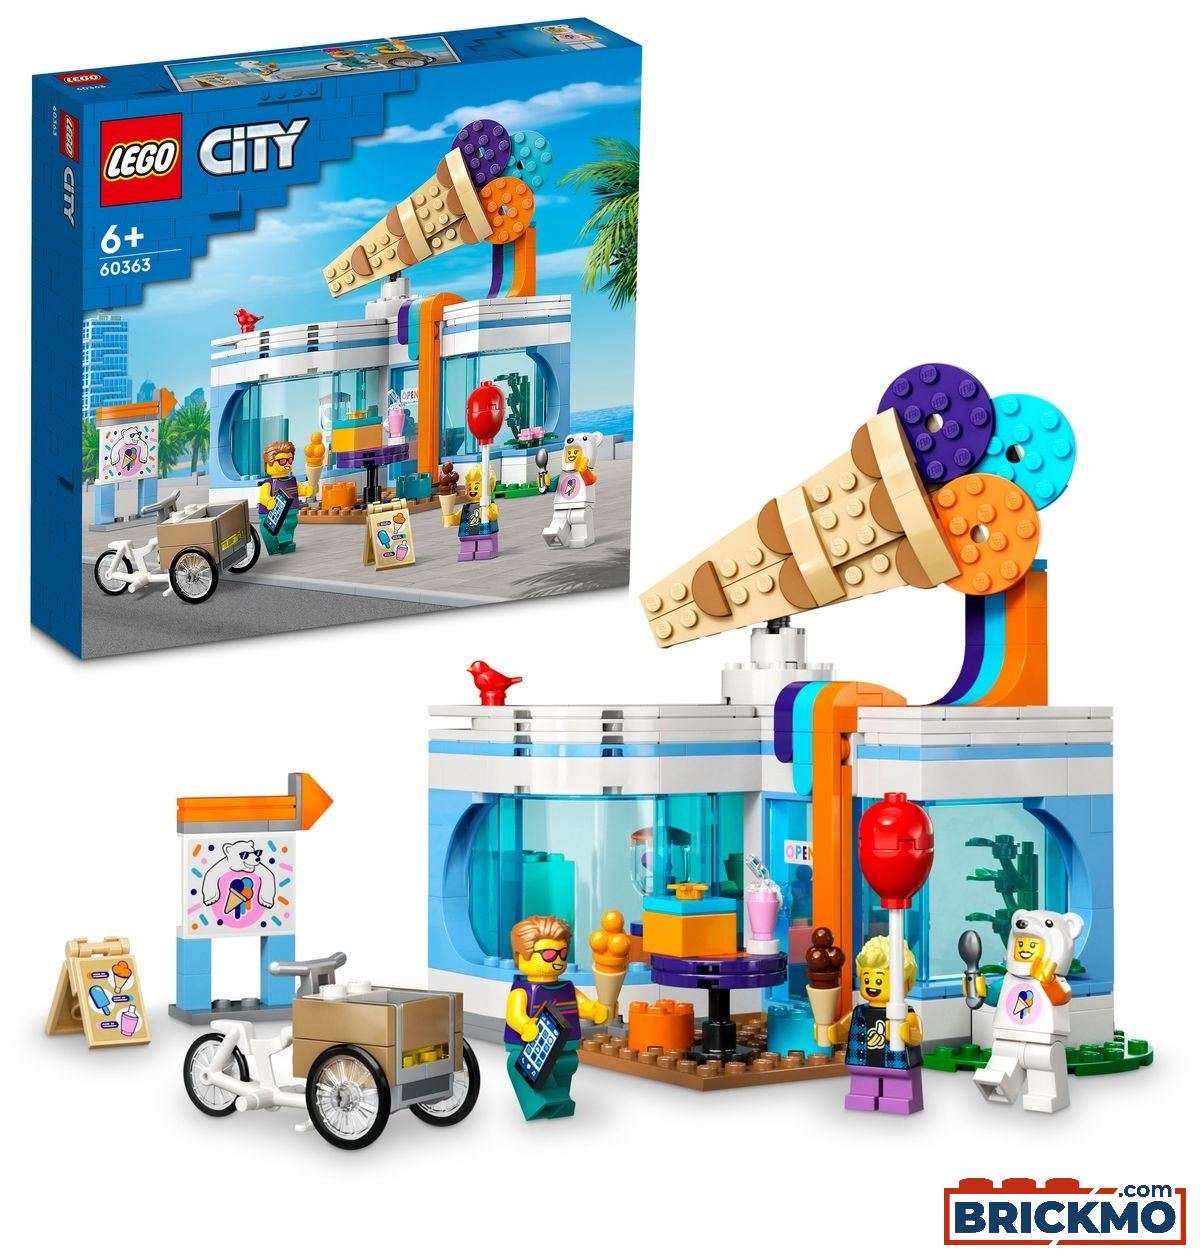 LEGO City 60363 Eisdiele 60363